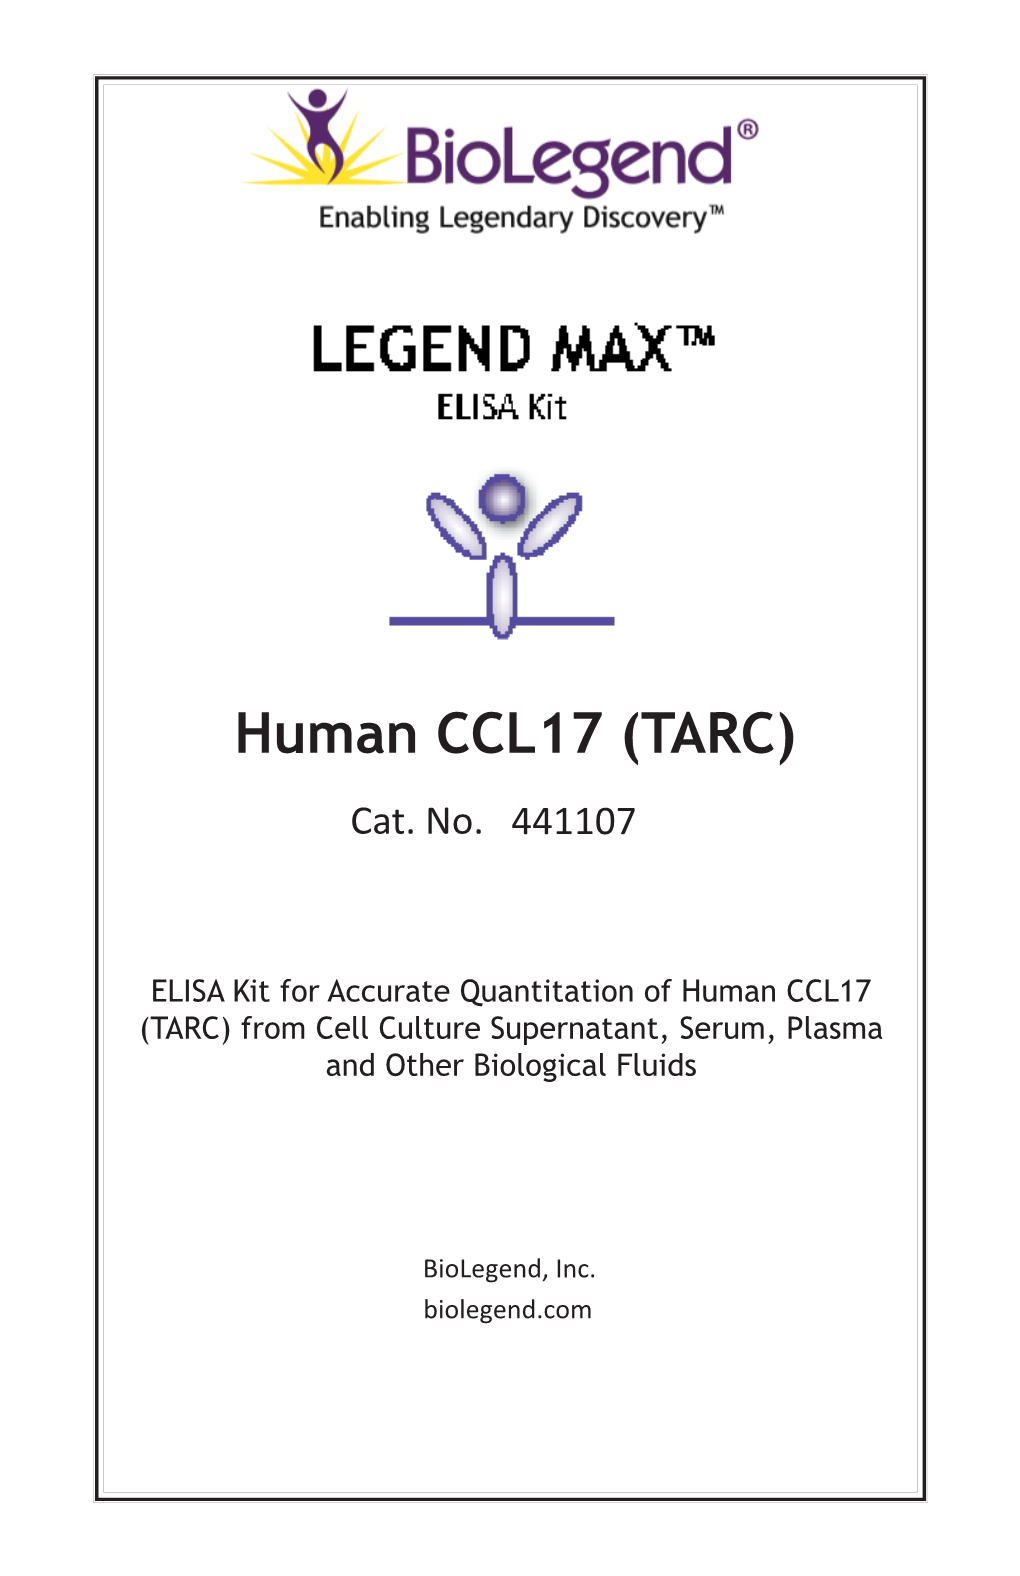 Human CCL17 (TARC) Cat